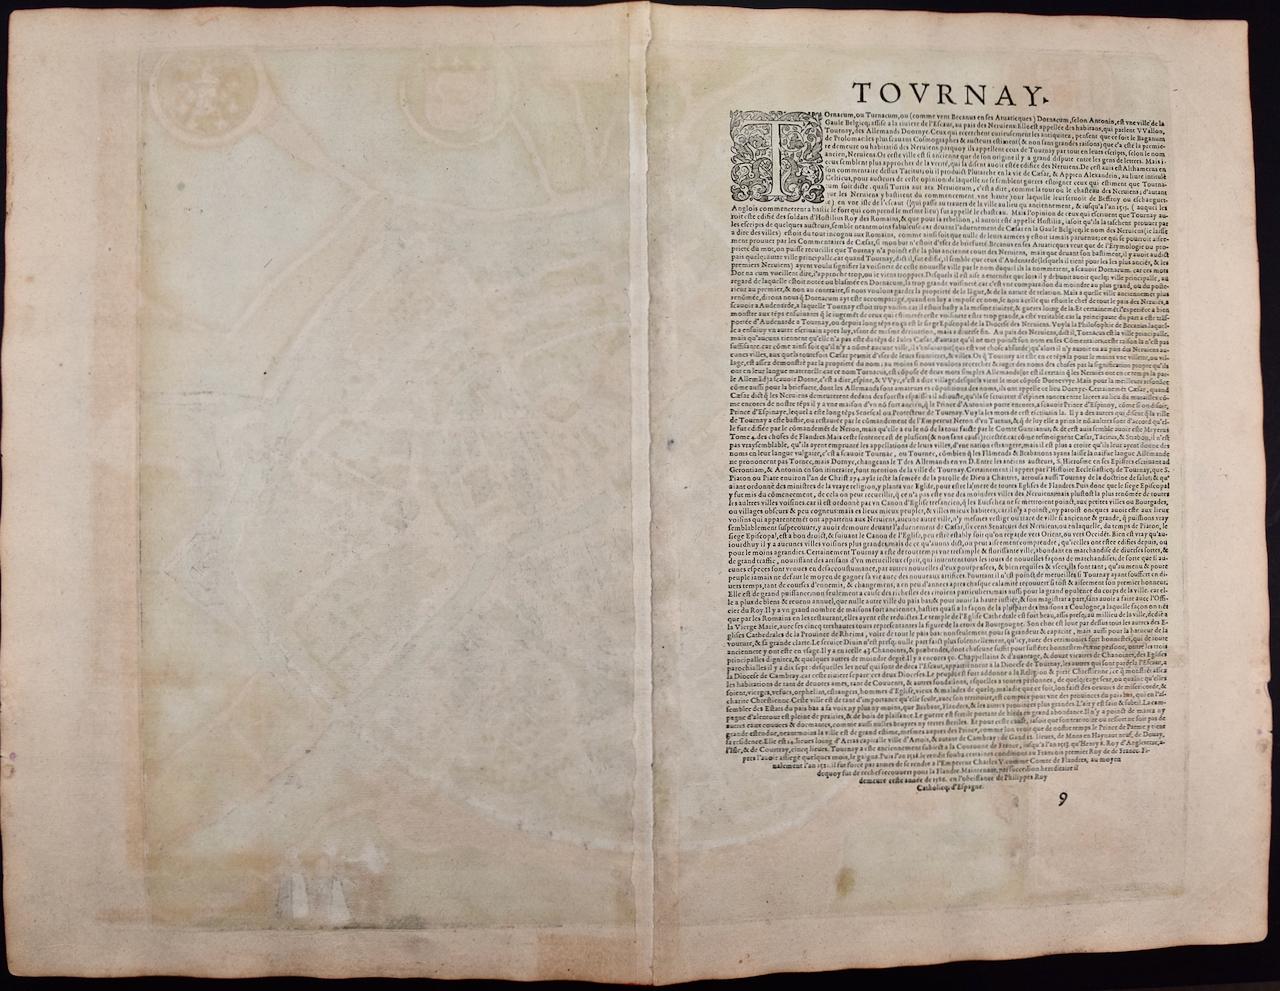 Tournai ( Tournay), Belgique : une carte du 16e siècle colorée à la main par Braun & Hogenberg - Beige Landscape Print par Frans Hogenberg